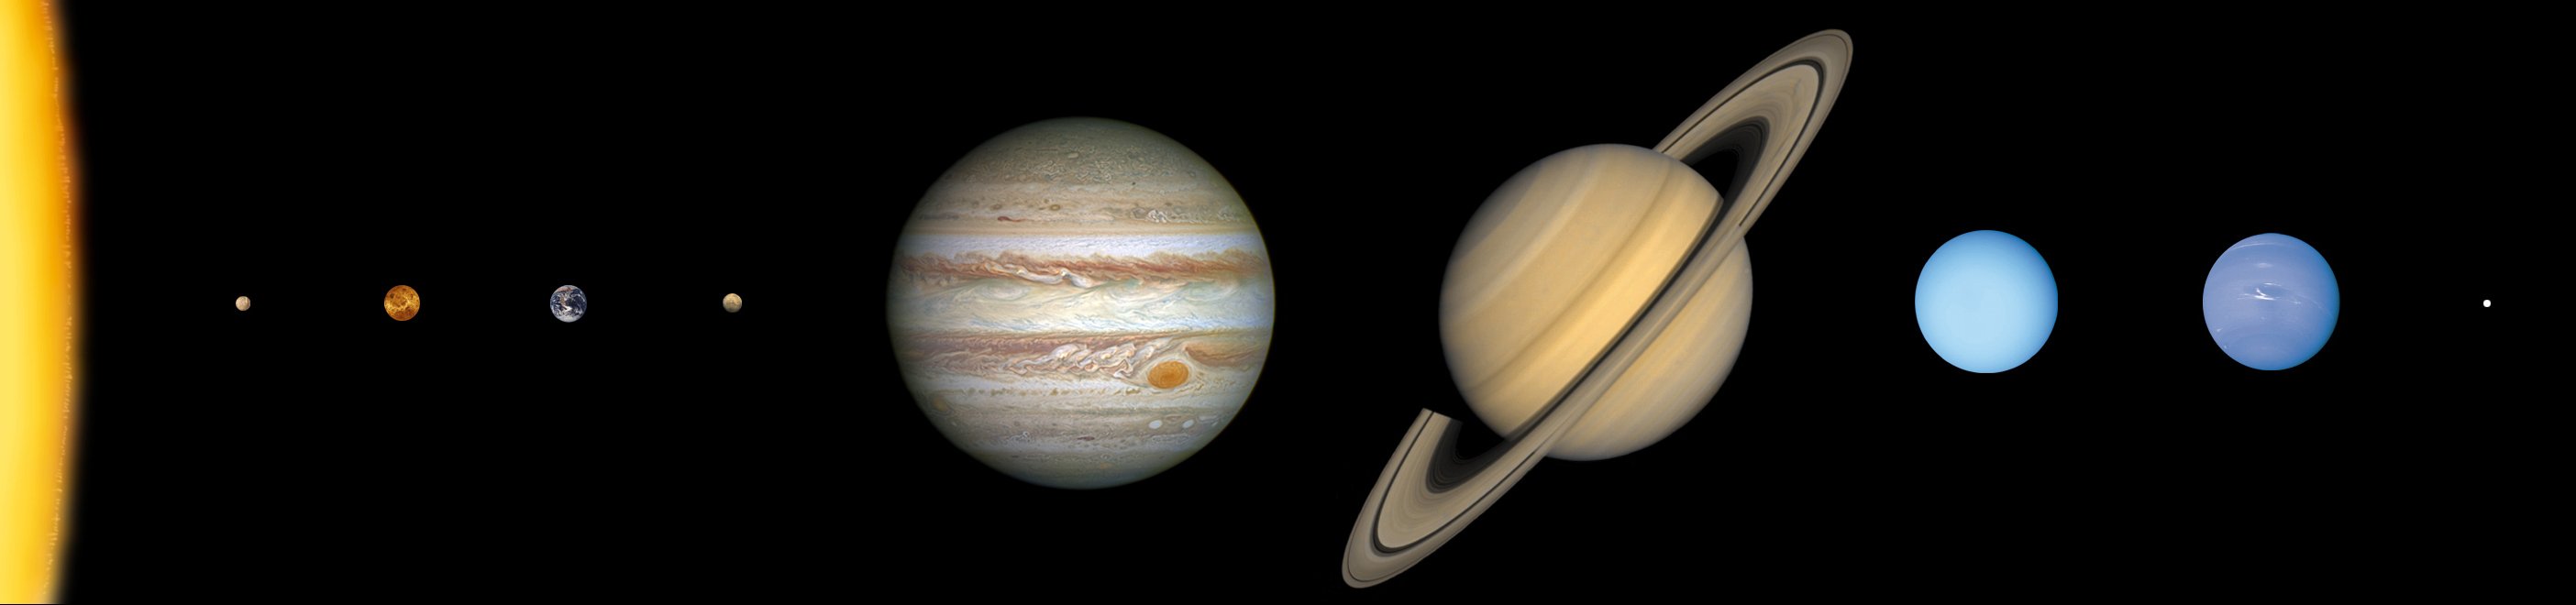 Sistema Solar em escala de tamanho dos objetos celestes (distância não está em escala)